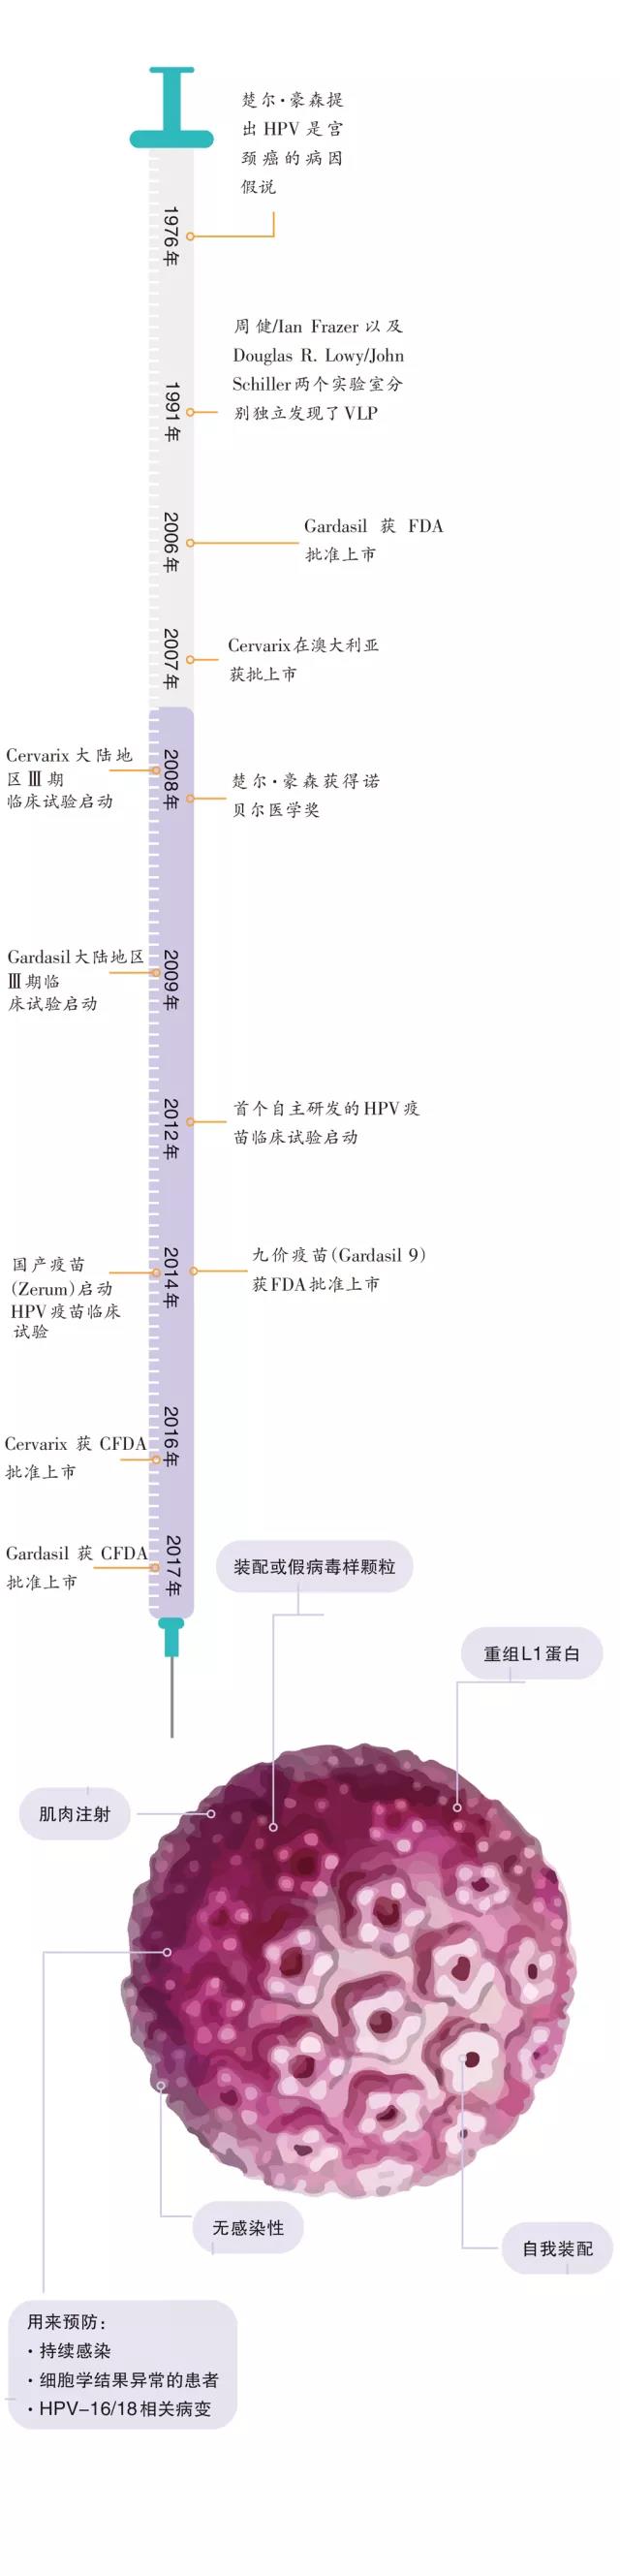 中国<font color="red">宫颈</font>癌防治研究20年历程